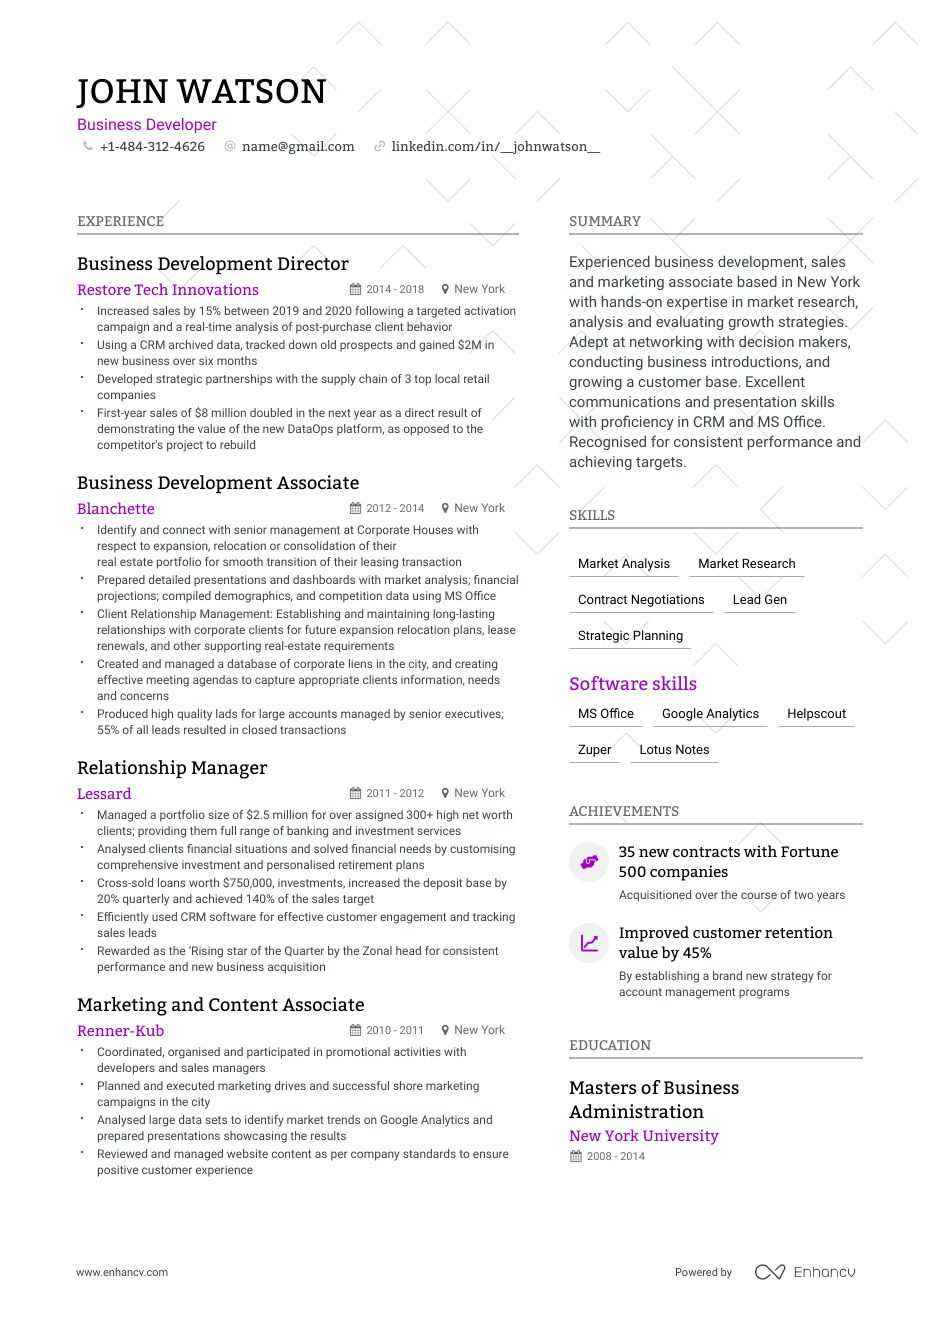 Sample Resume for International Development Jobs Business Development Resume Samples [4 Templates   Tips]